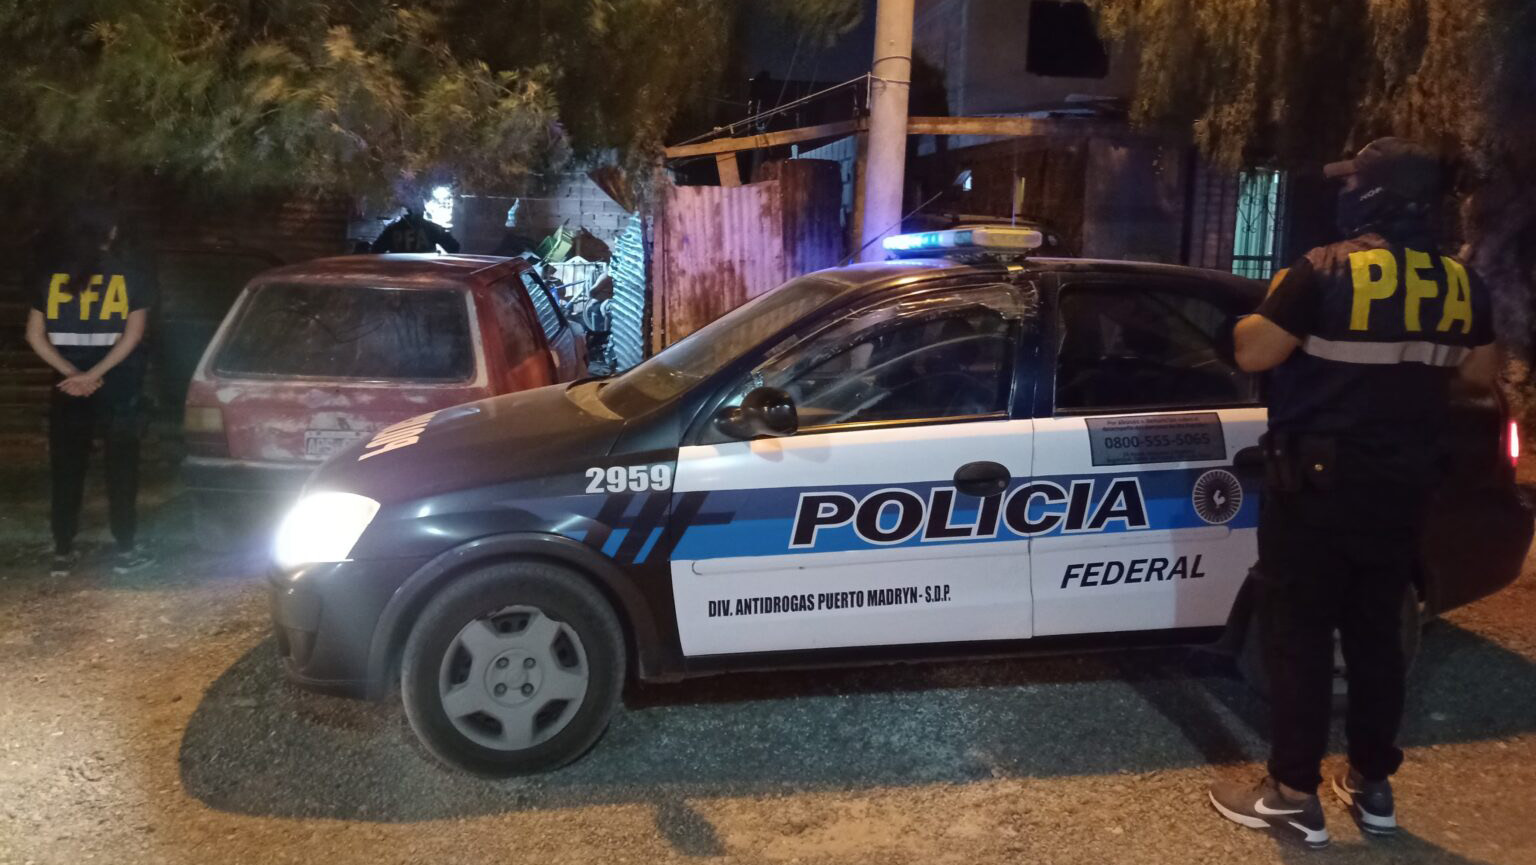 La Policía Federal allanó una vivienda en Puerto Madryn por narcomenudeo